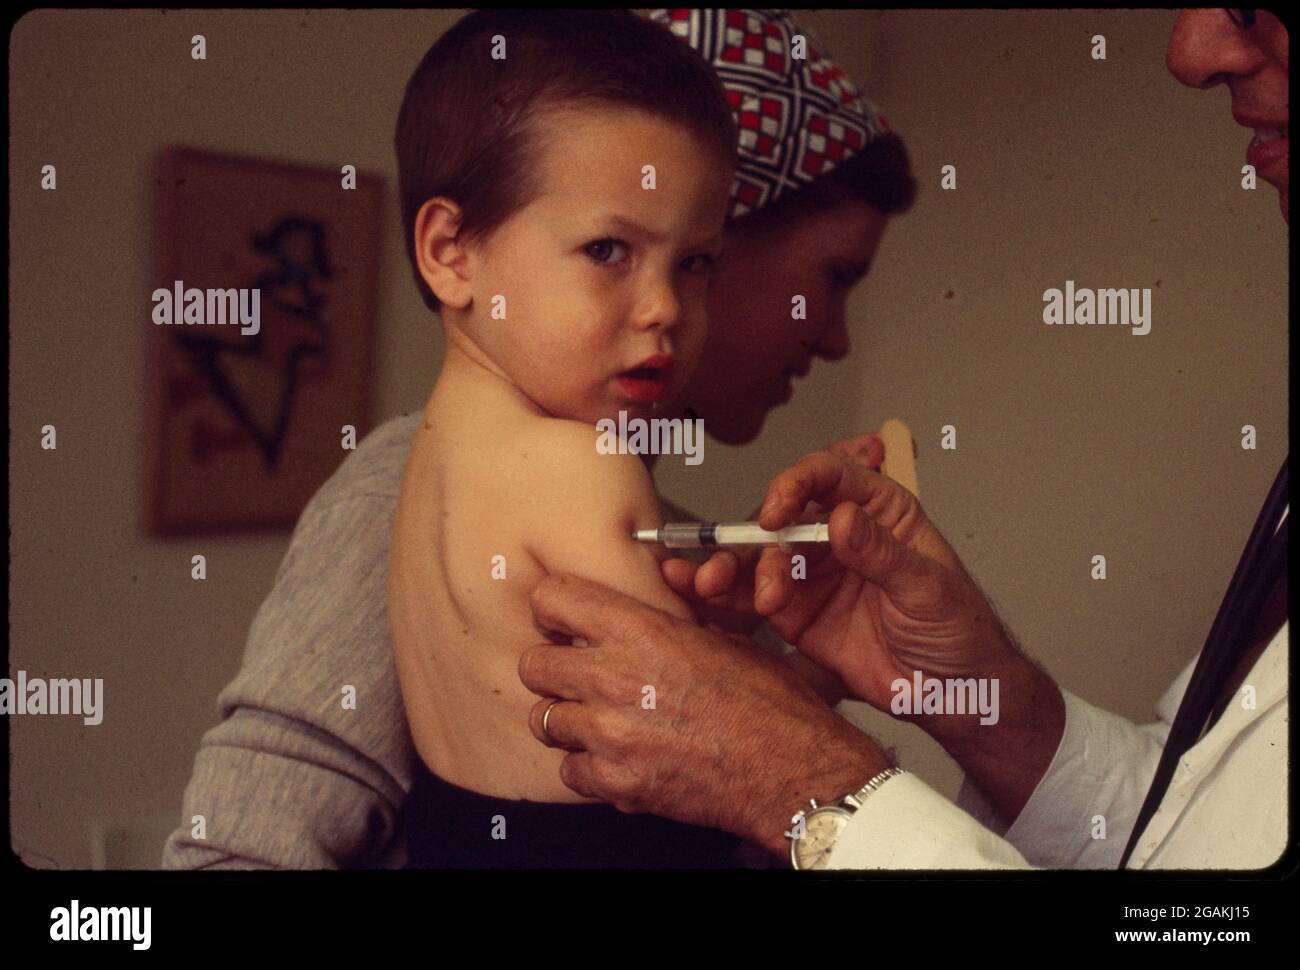 Das Kind, das in den Armen seiner Mutter gehalten wird, erhält eine Impfung von einem Arzt, ohne Ort, 1970. (Foto von Bernard Gotfryd/LOC/RBM Vintage Images) Stockfoto